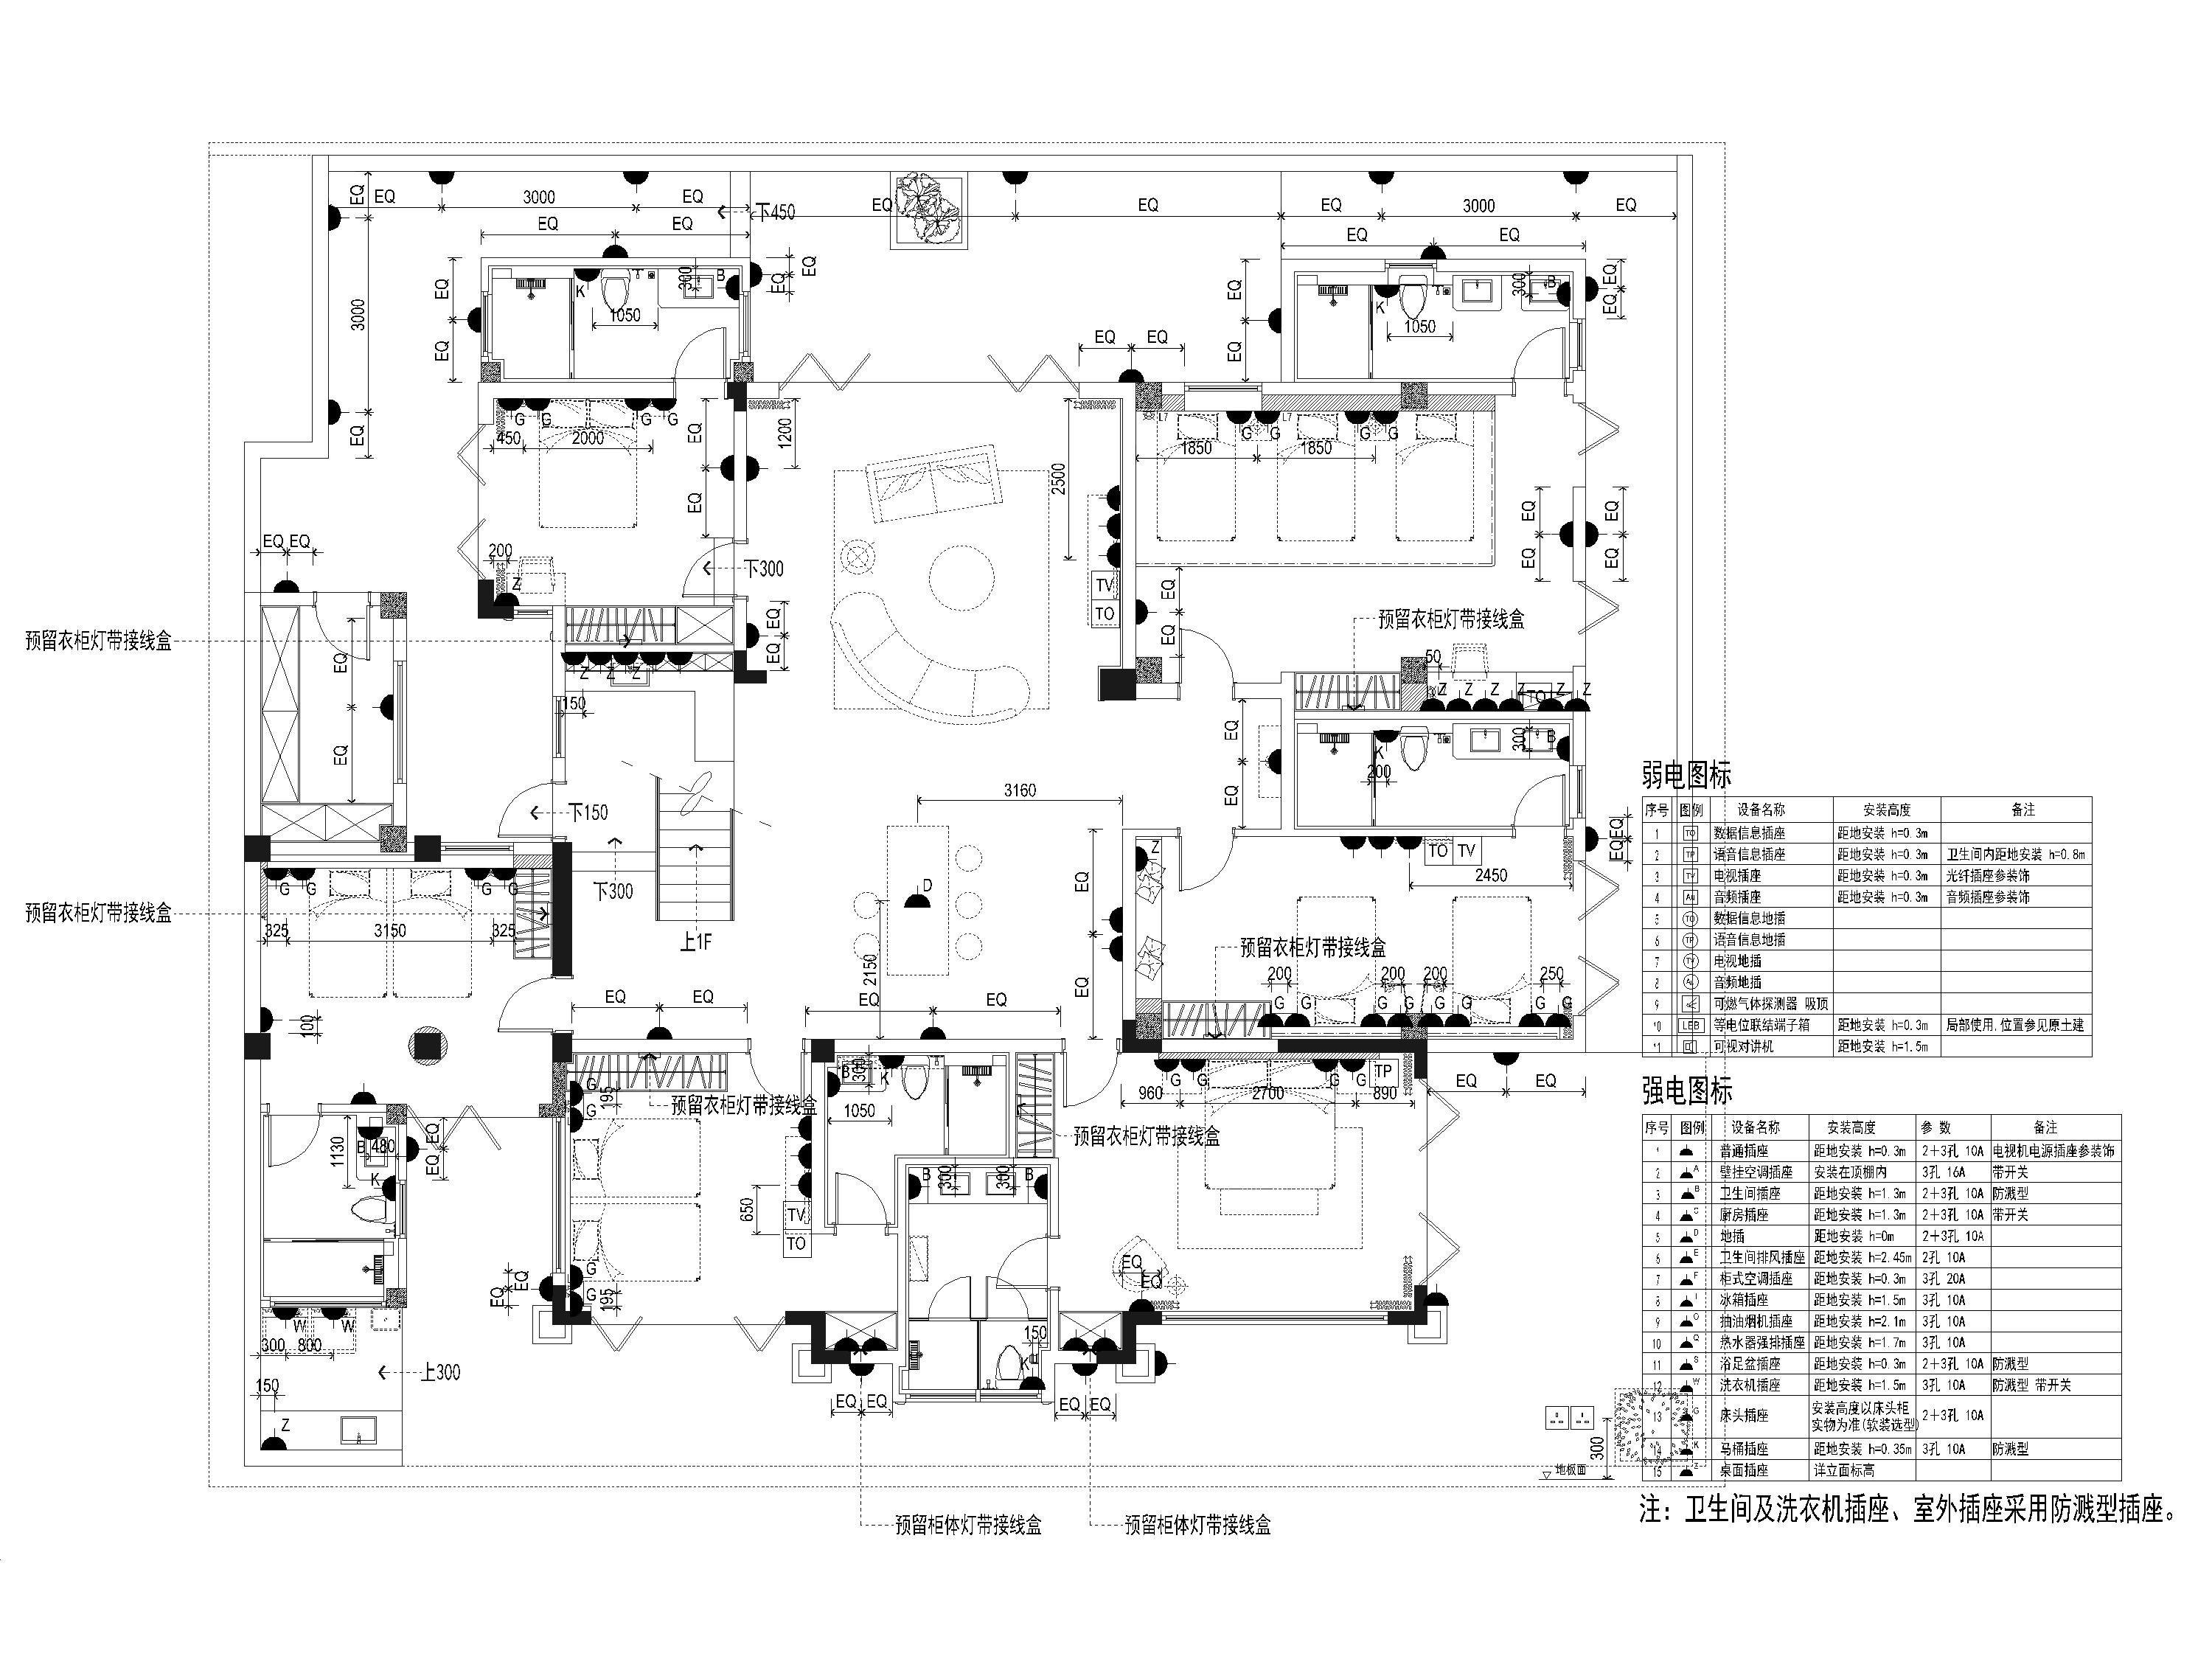 [海南]900m²六居别墅装修设计施工图+3D模型-负一层插座布置图